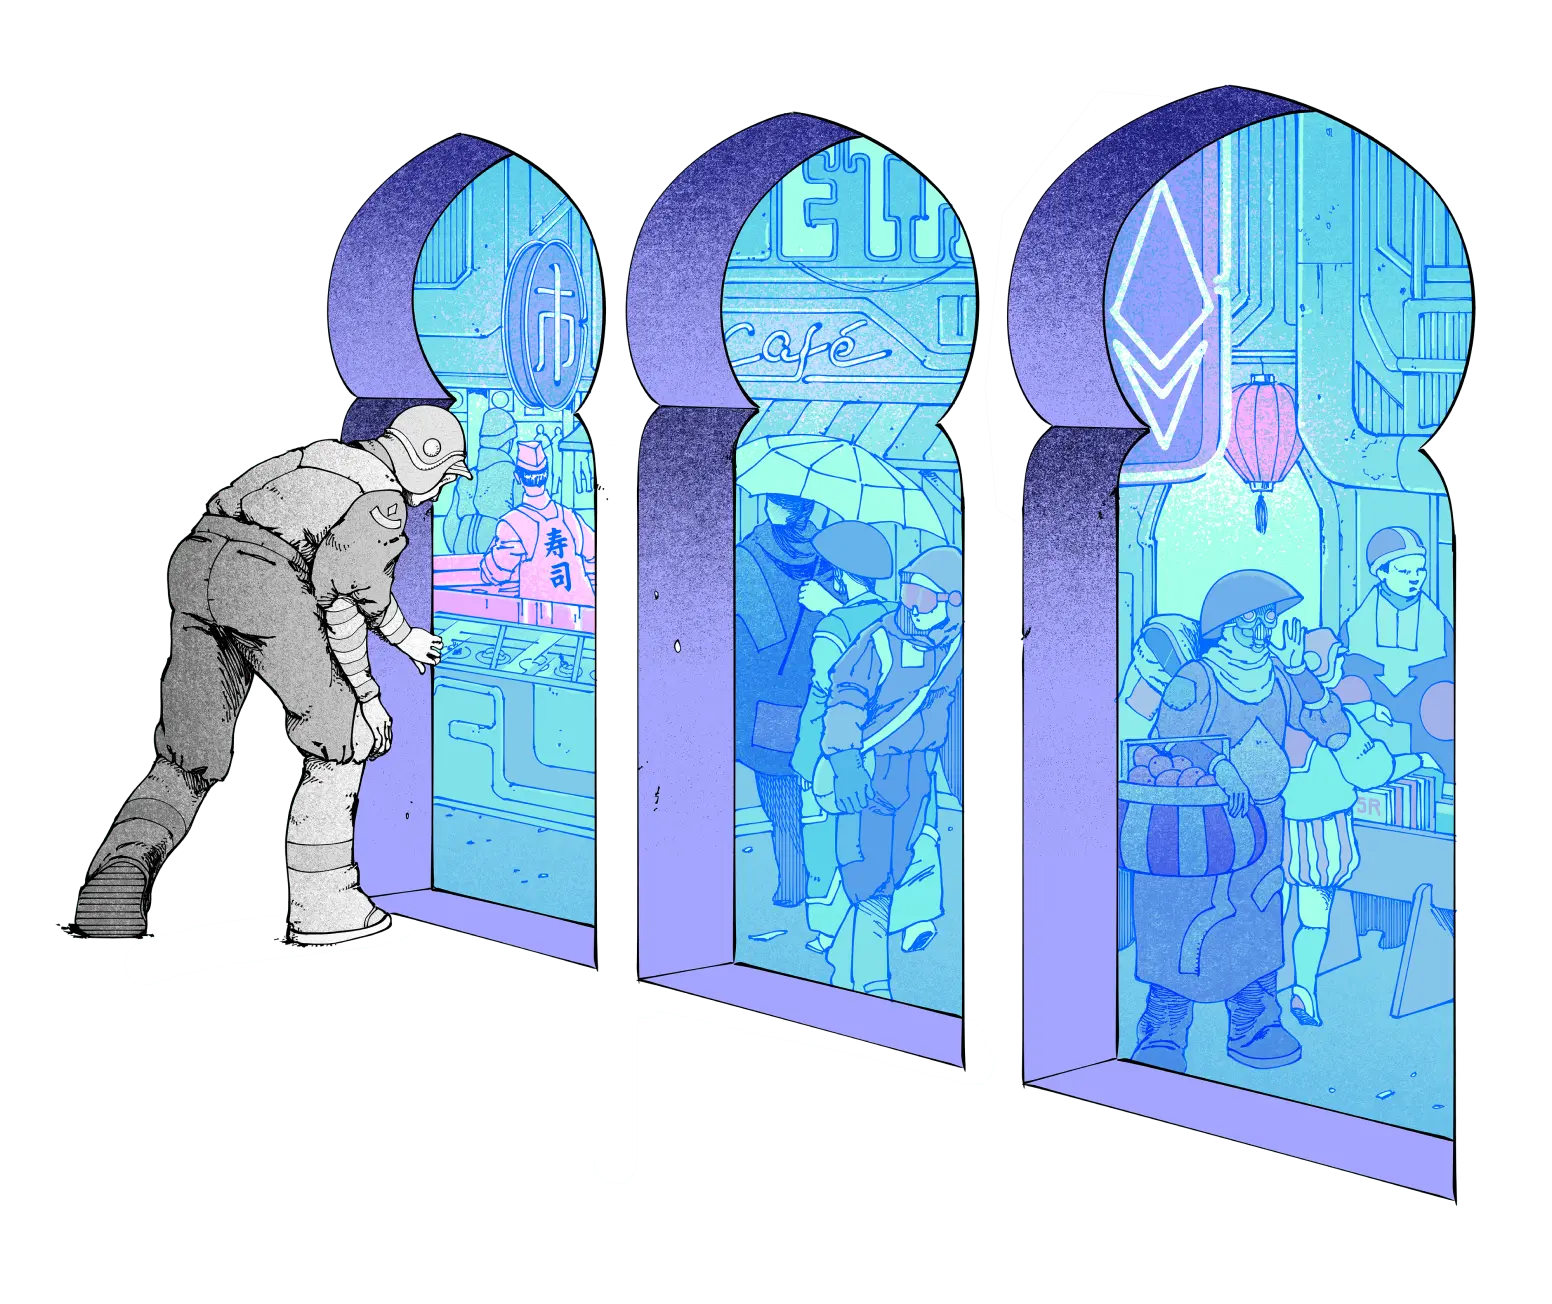 Ilustración de una persona que entra en un bazar, que pretende representar a Ethereum